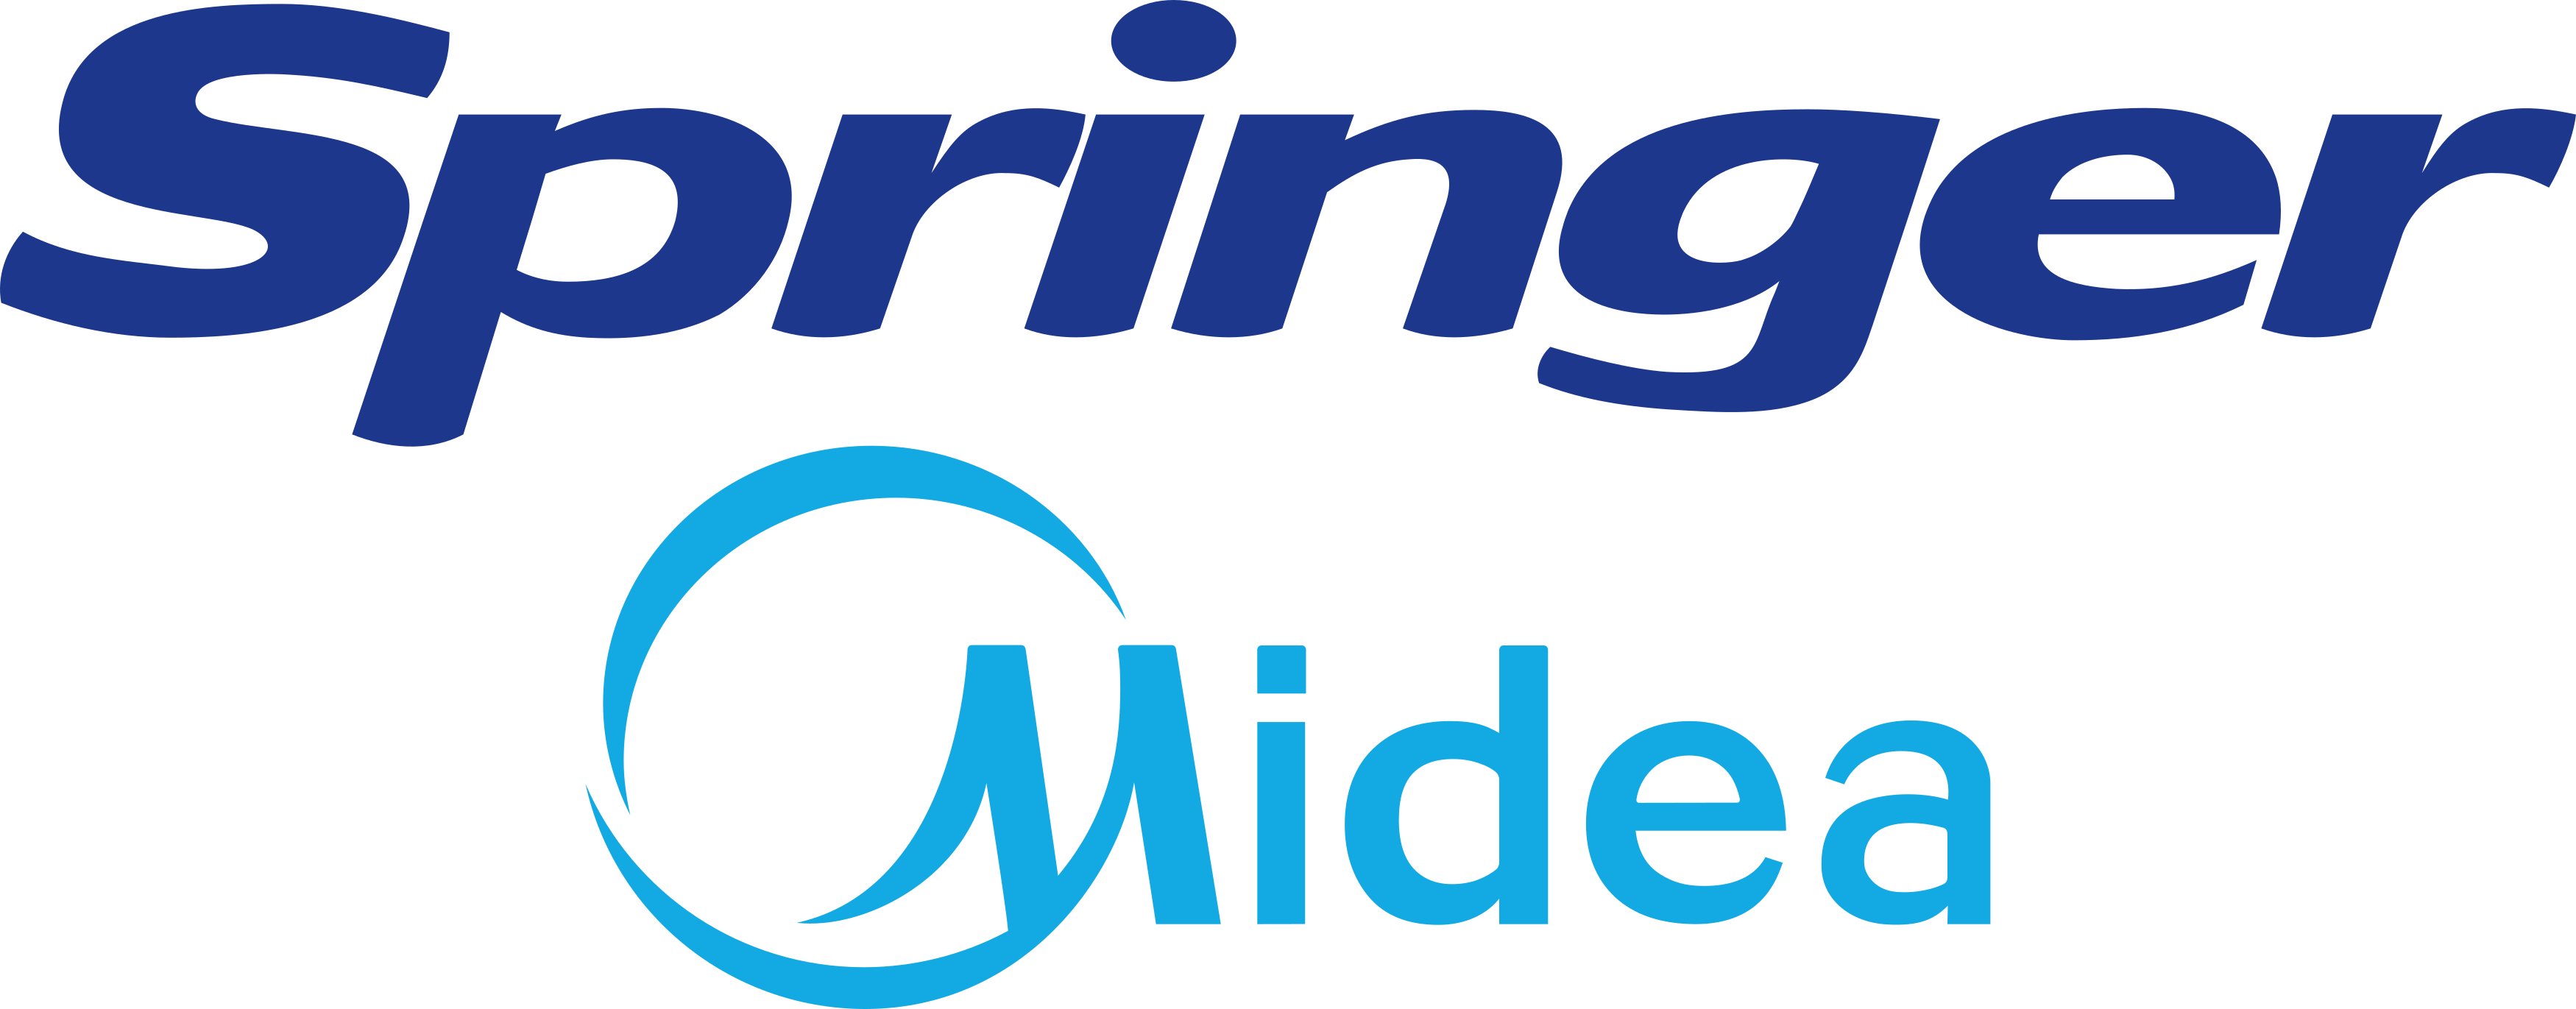 springer-logo-1